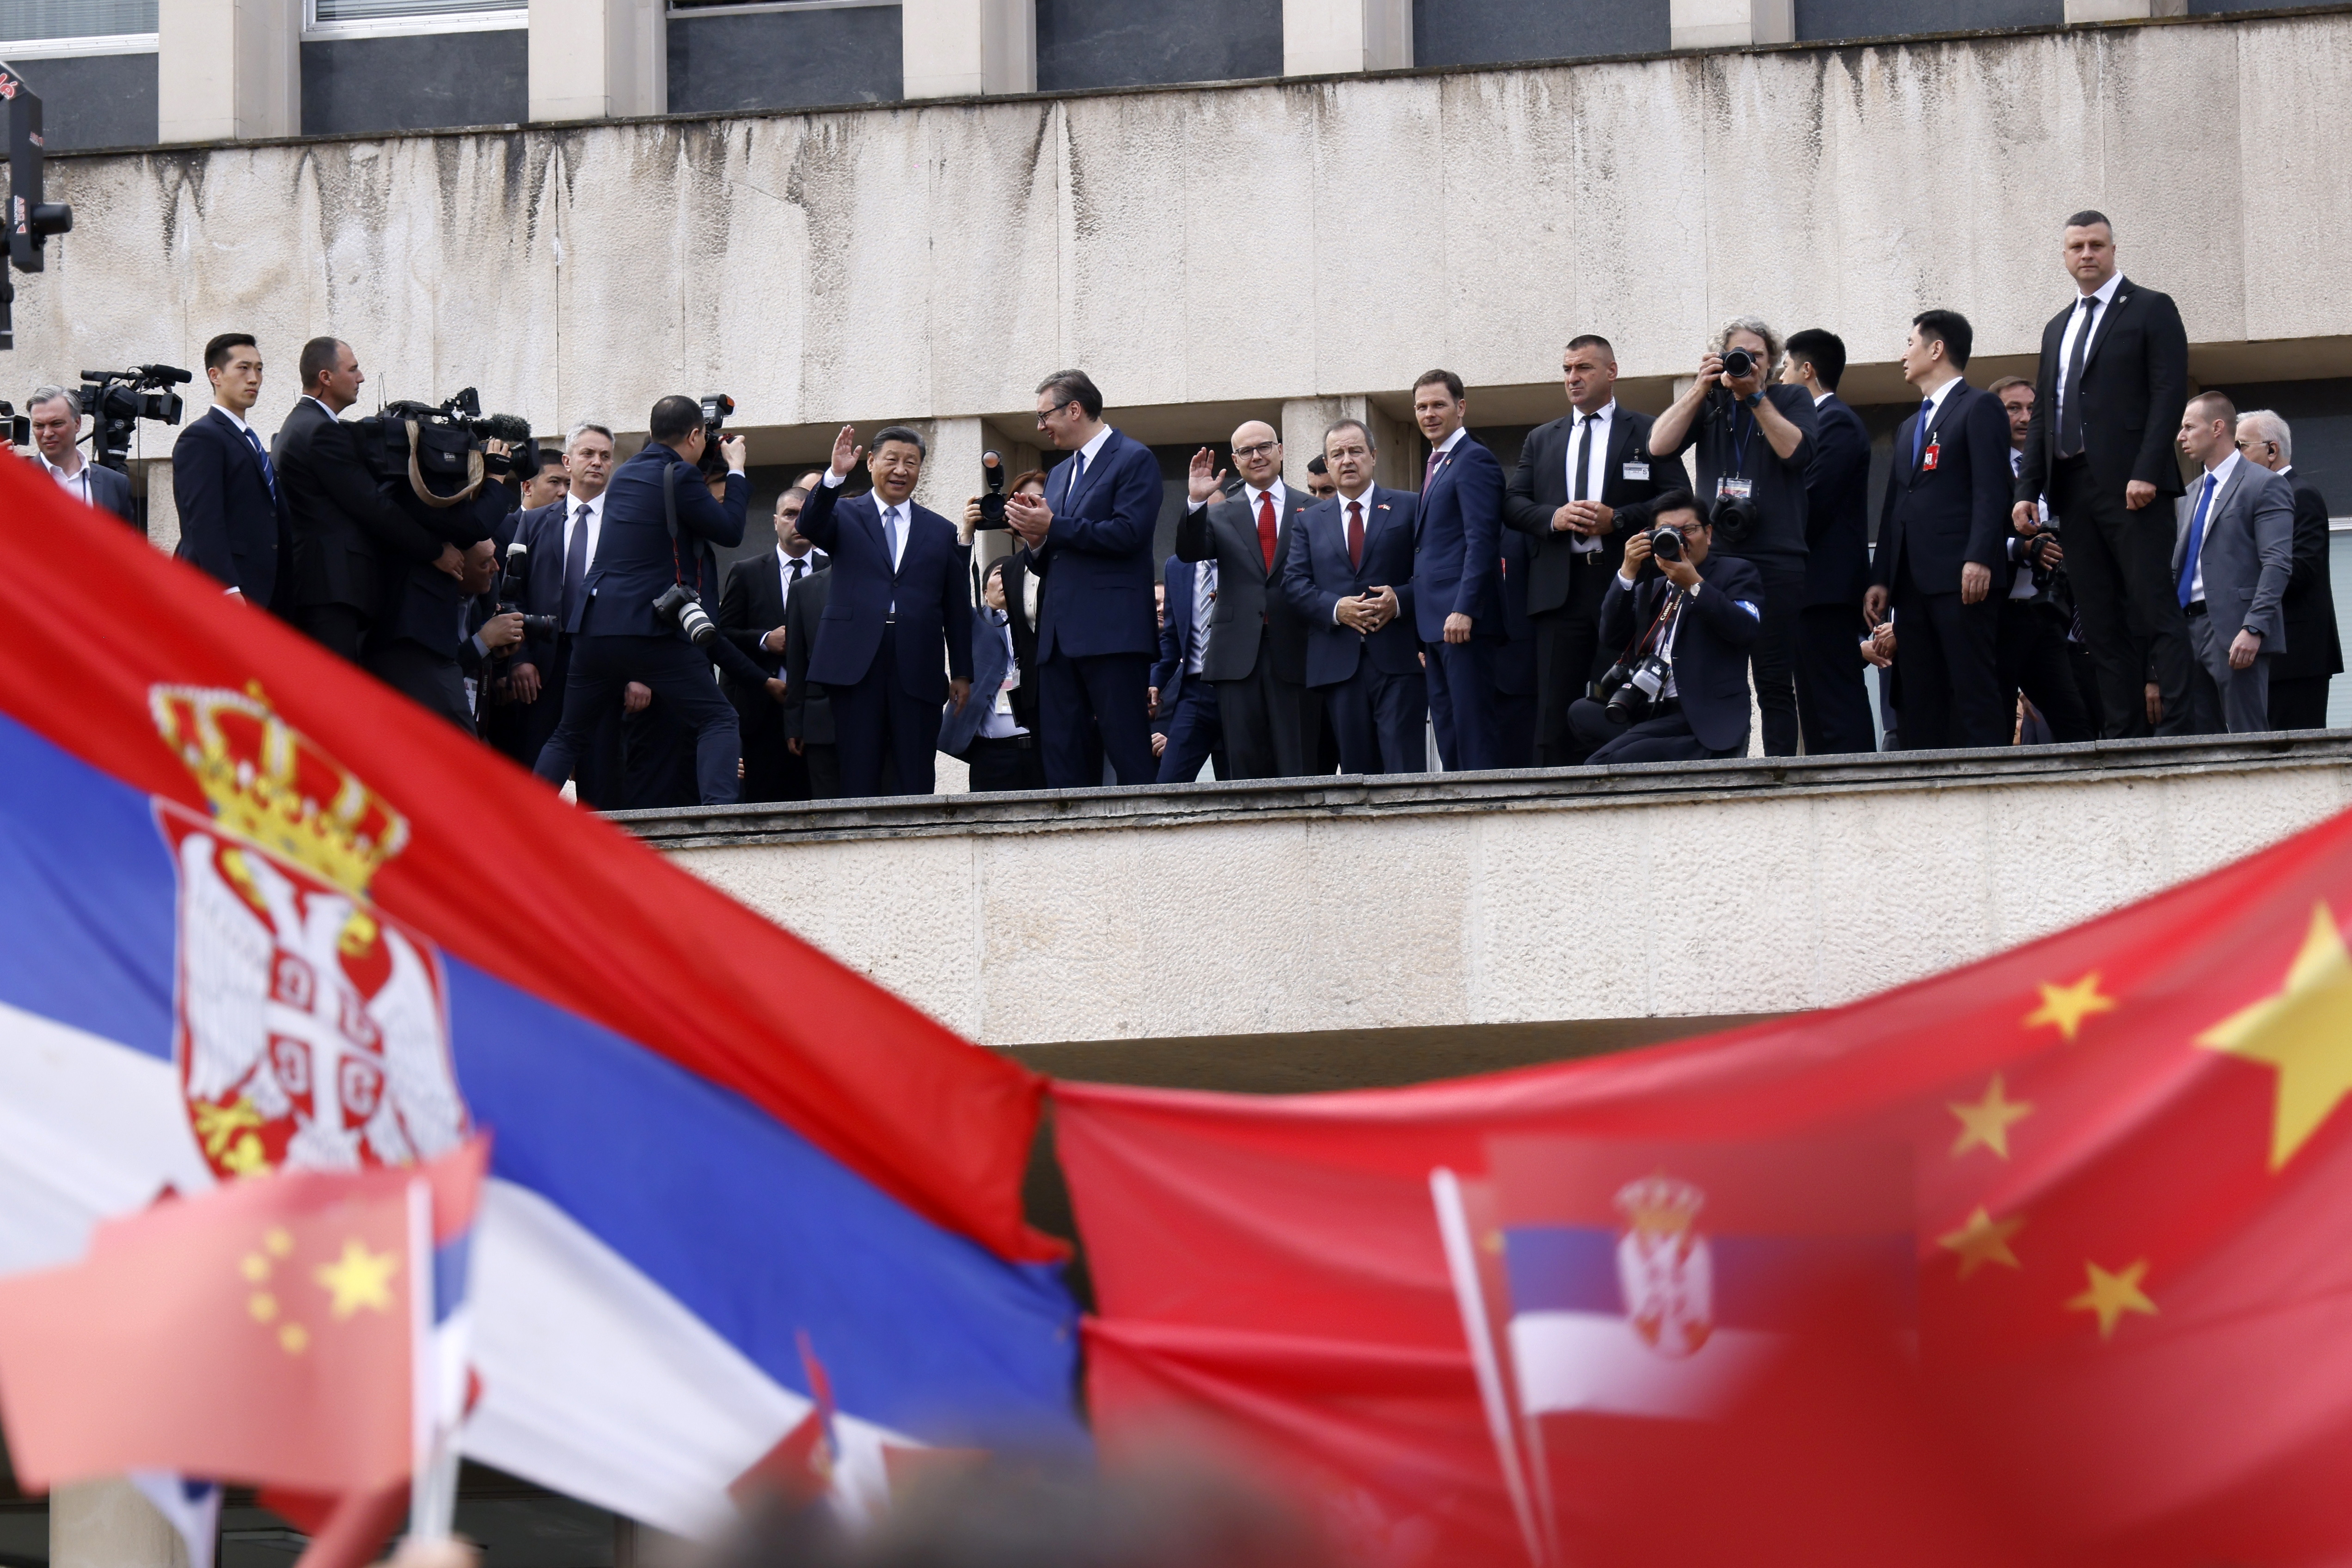 Хиляди души посрещнаха китайския президент Си Дзинпин в Белград.Тържествената церемония